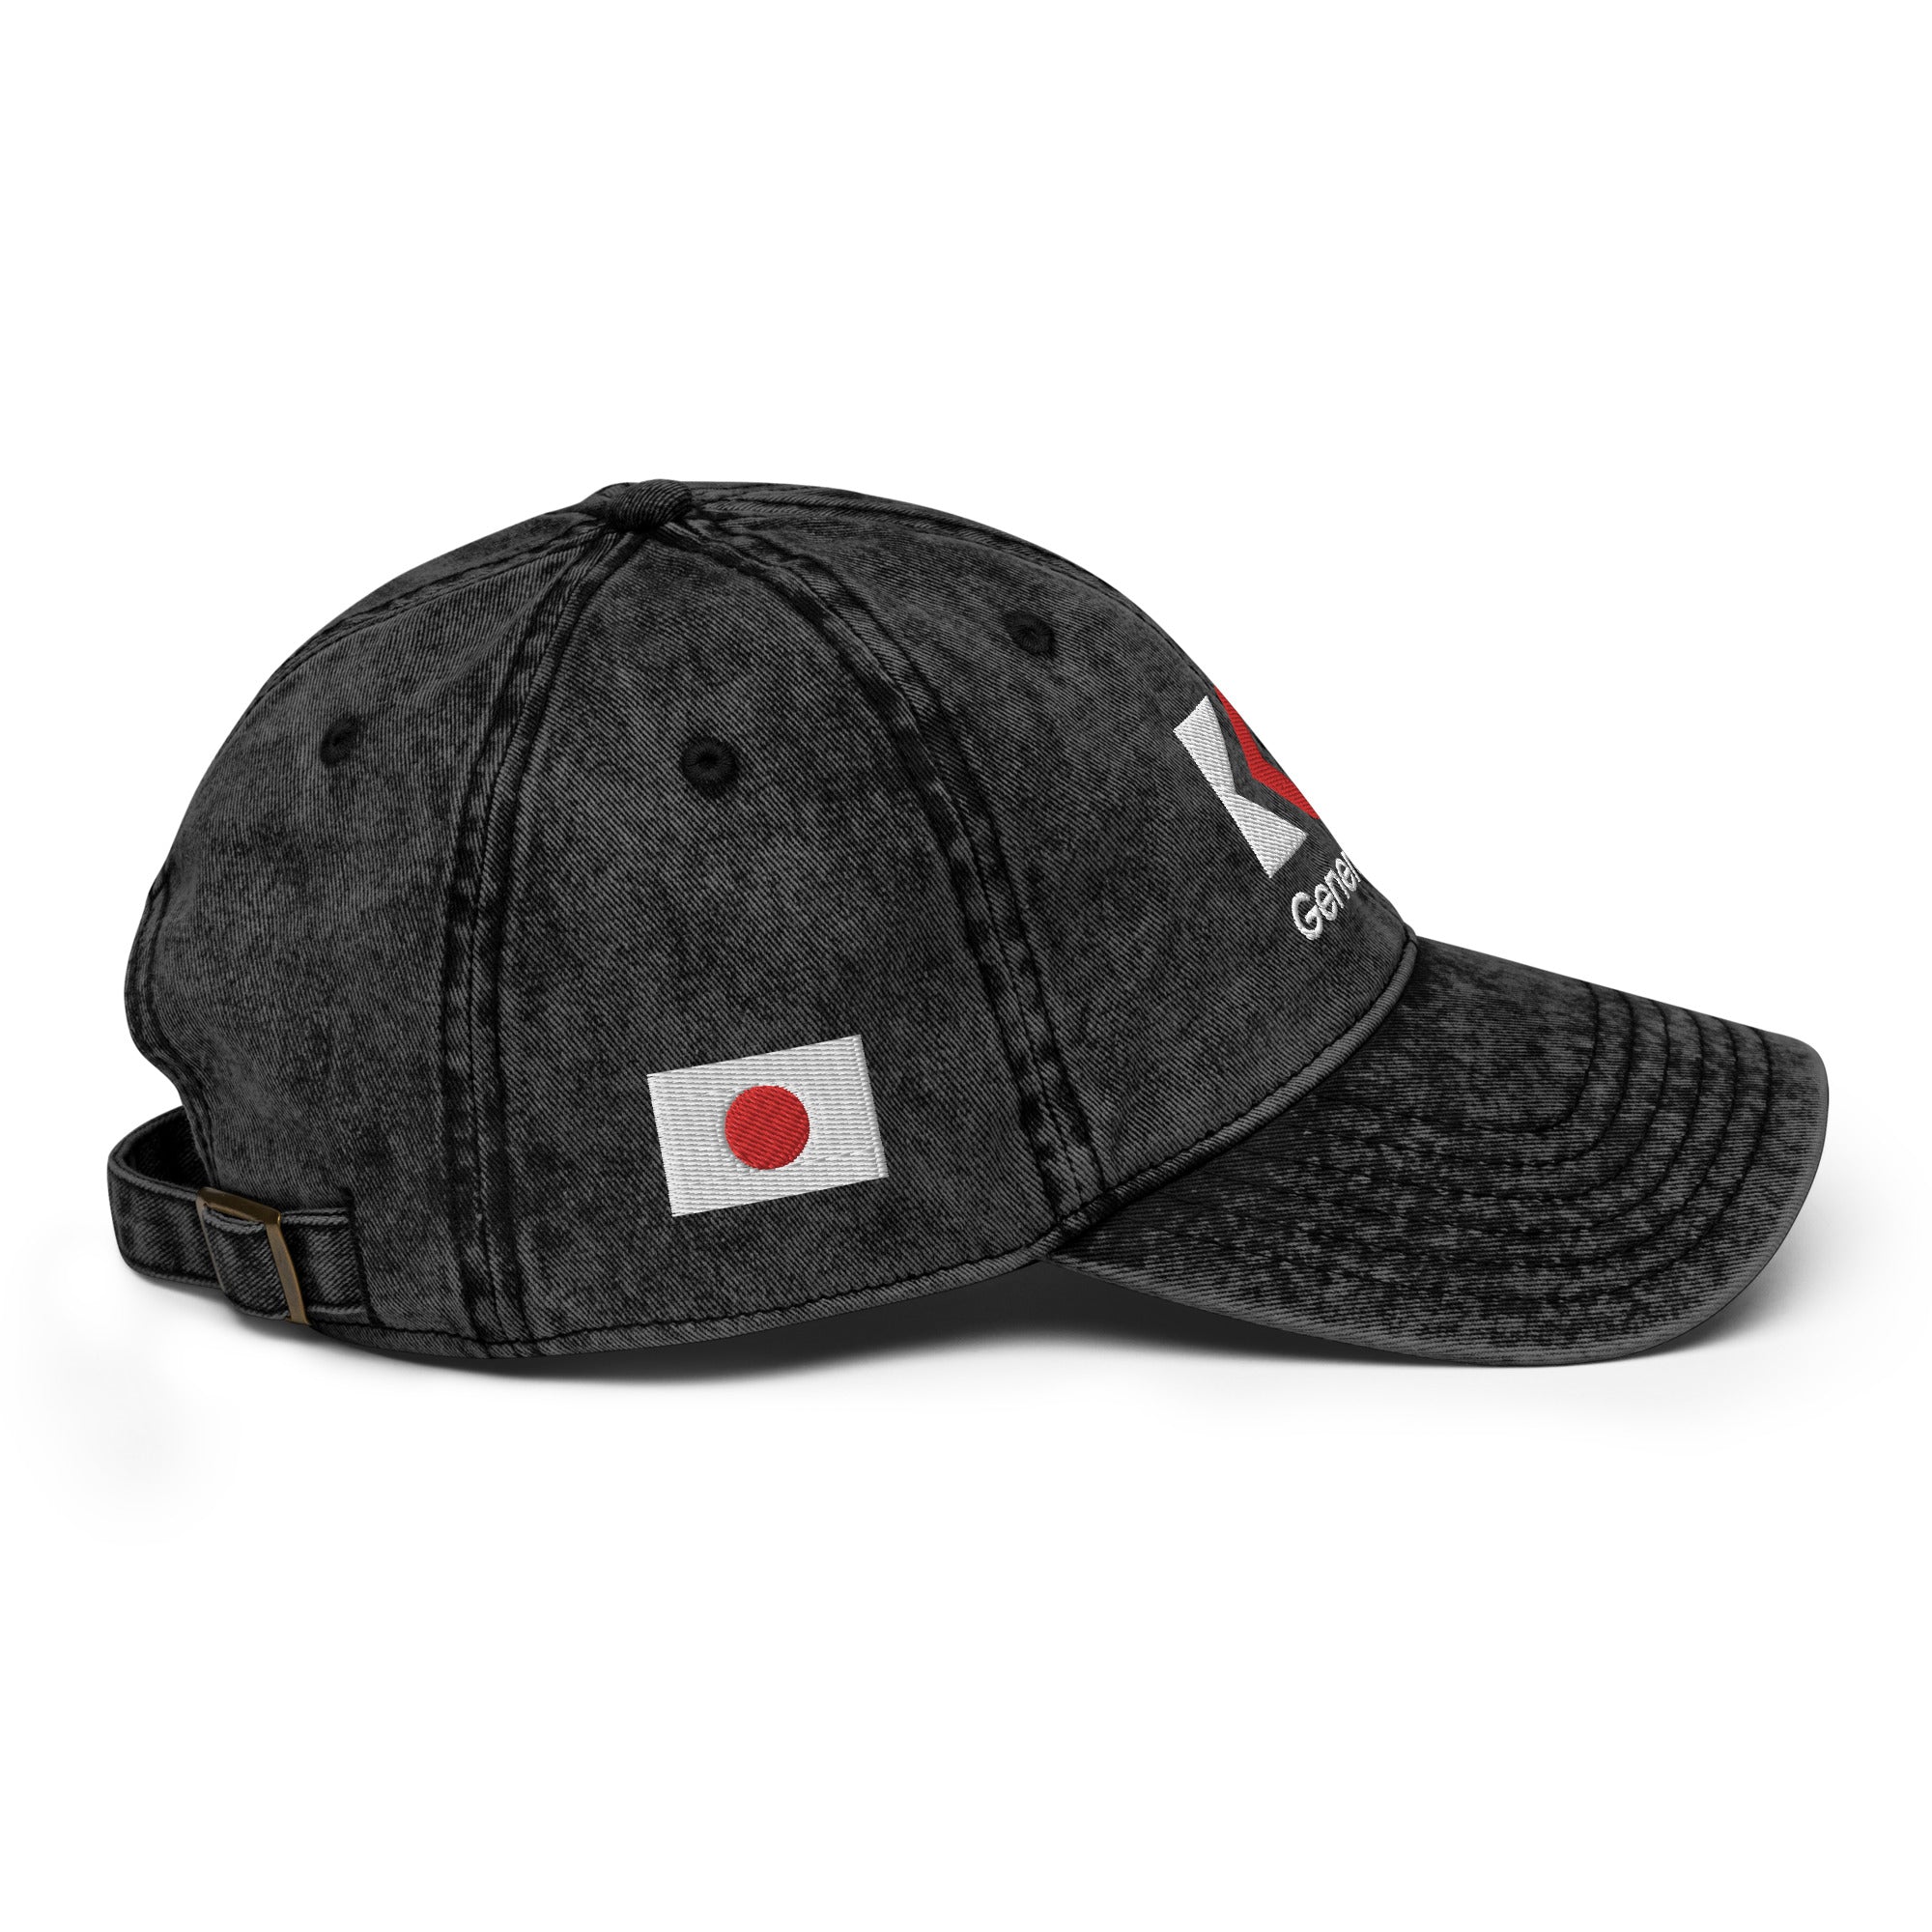 🇯🇵 Japan Vintage Cotton Twill Cap